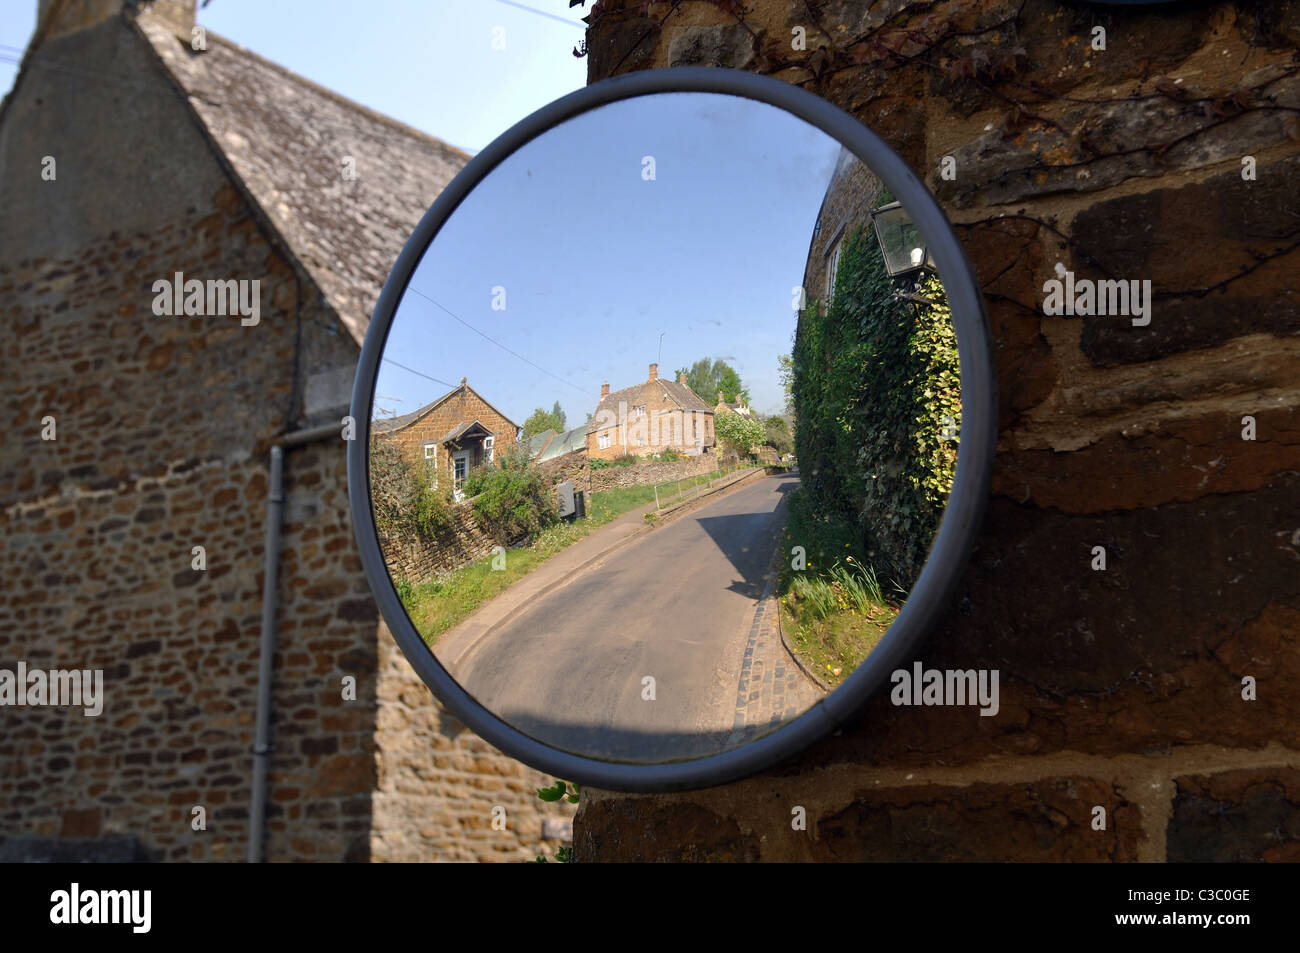 Espejo convexo para facilitar la visibilidad de los automovilistas en un pueblo Foto de stock